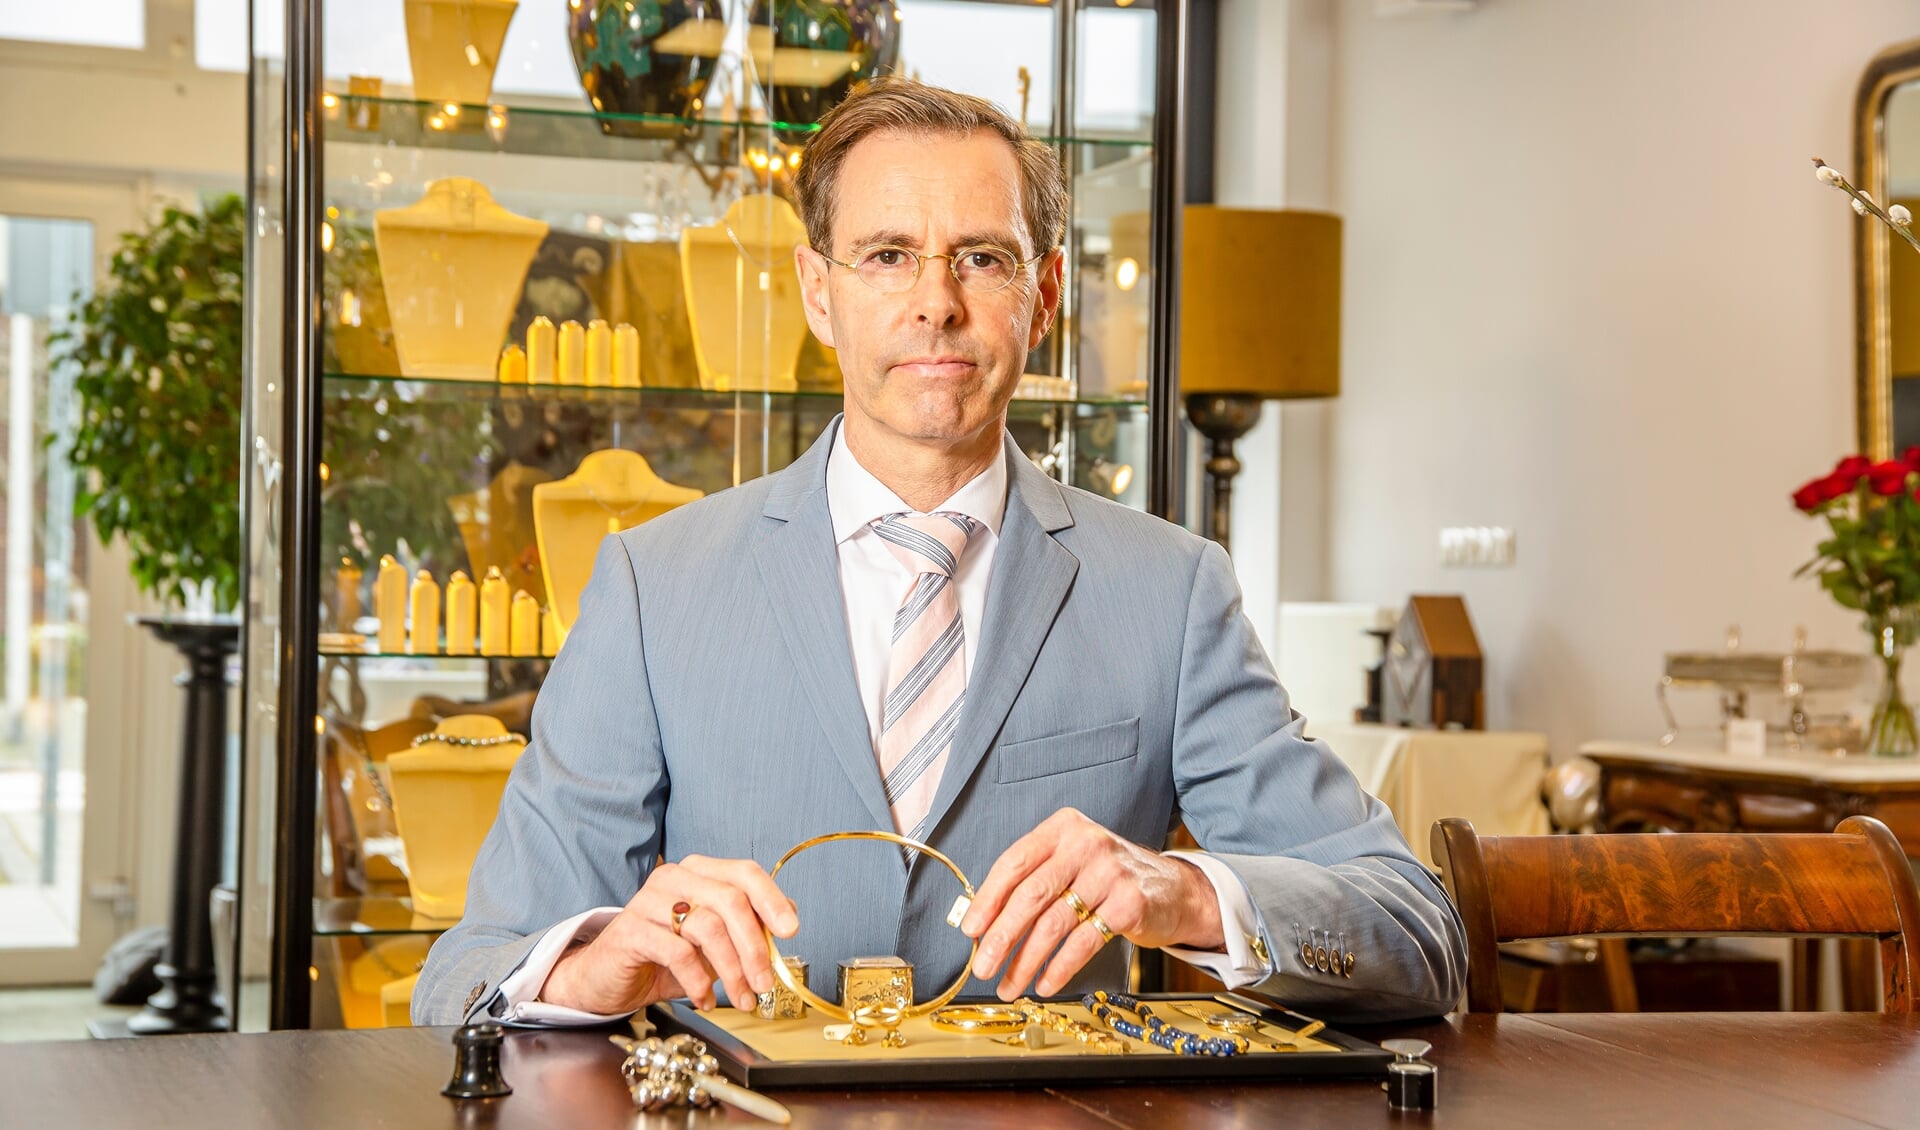 Juwelier Chris van Waes uit Poeldijk.